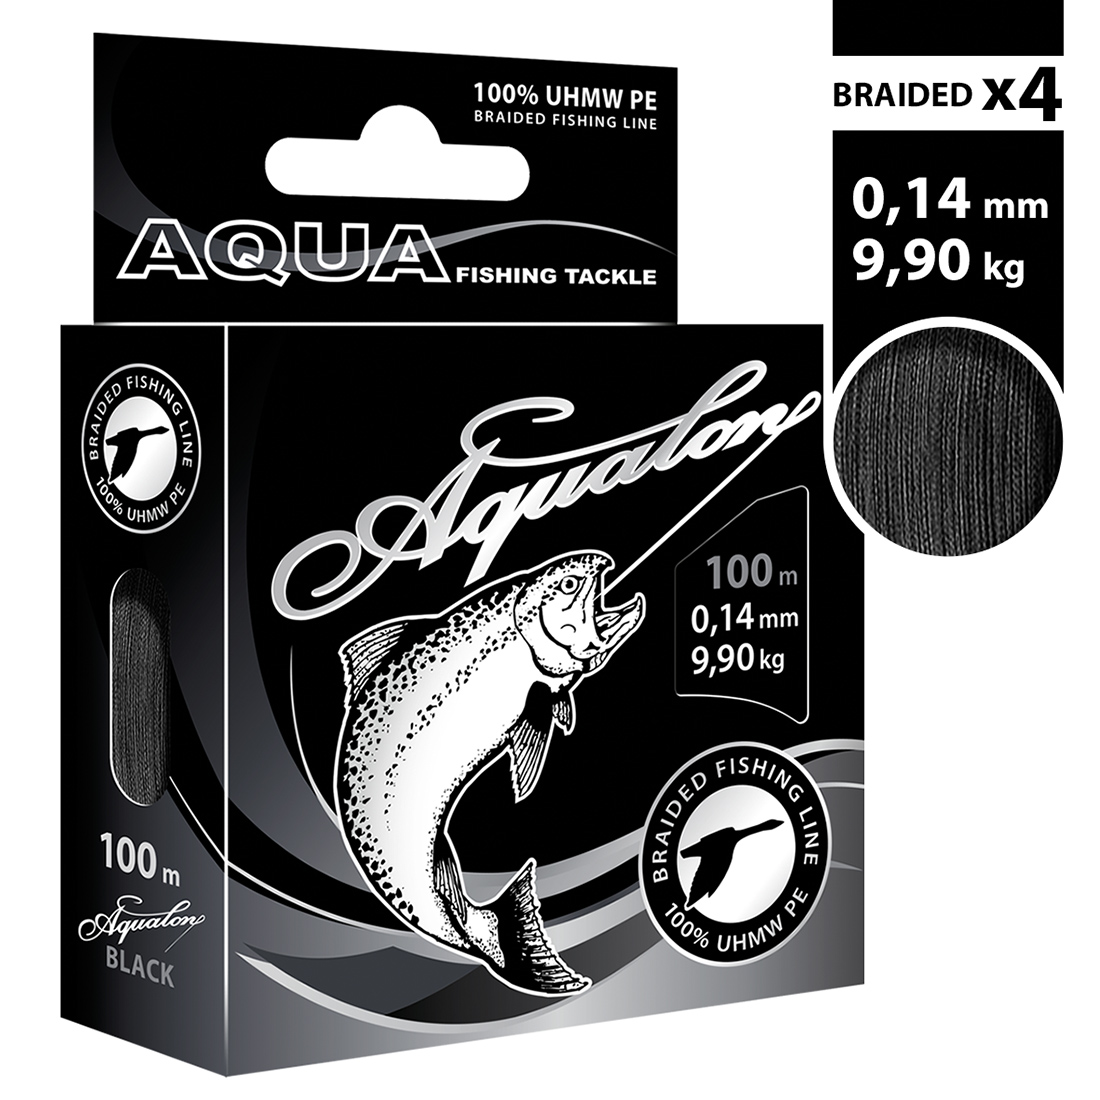 Плетеный шнур AQUA Aqualon Black 0,14mm 100m, цвет - черный, test - 9,90kg